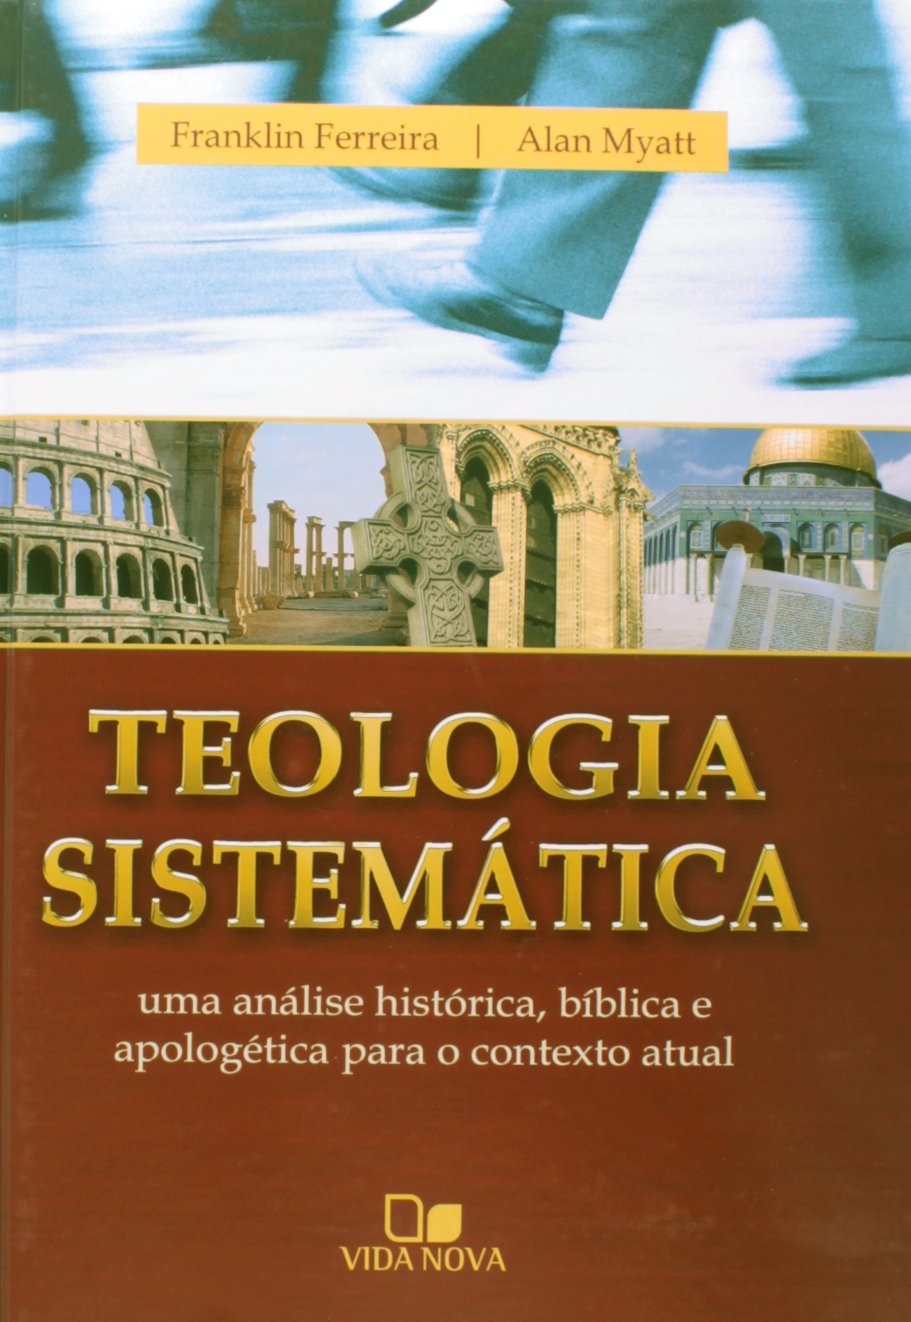 teologia sistematica pdf